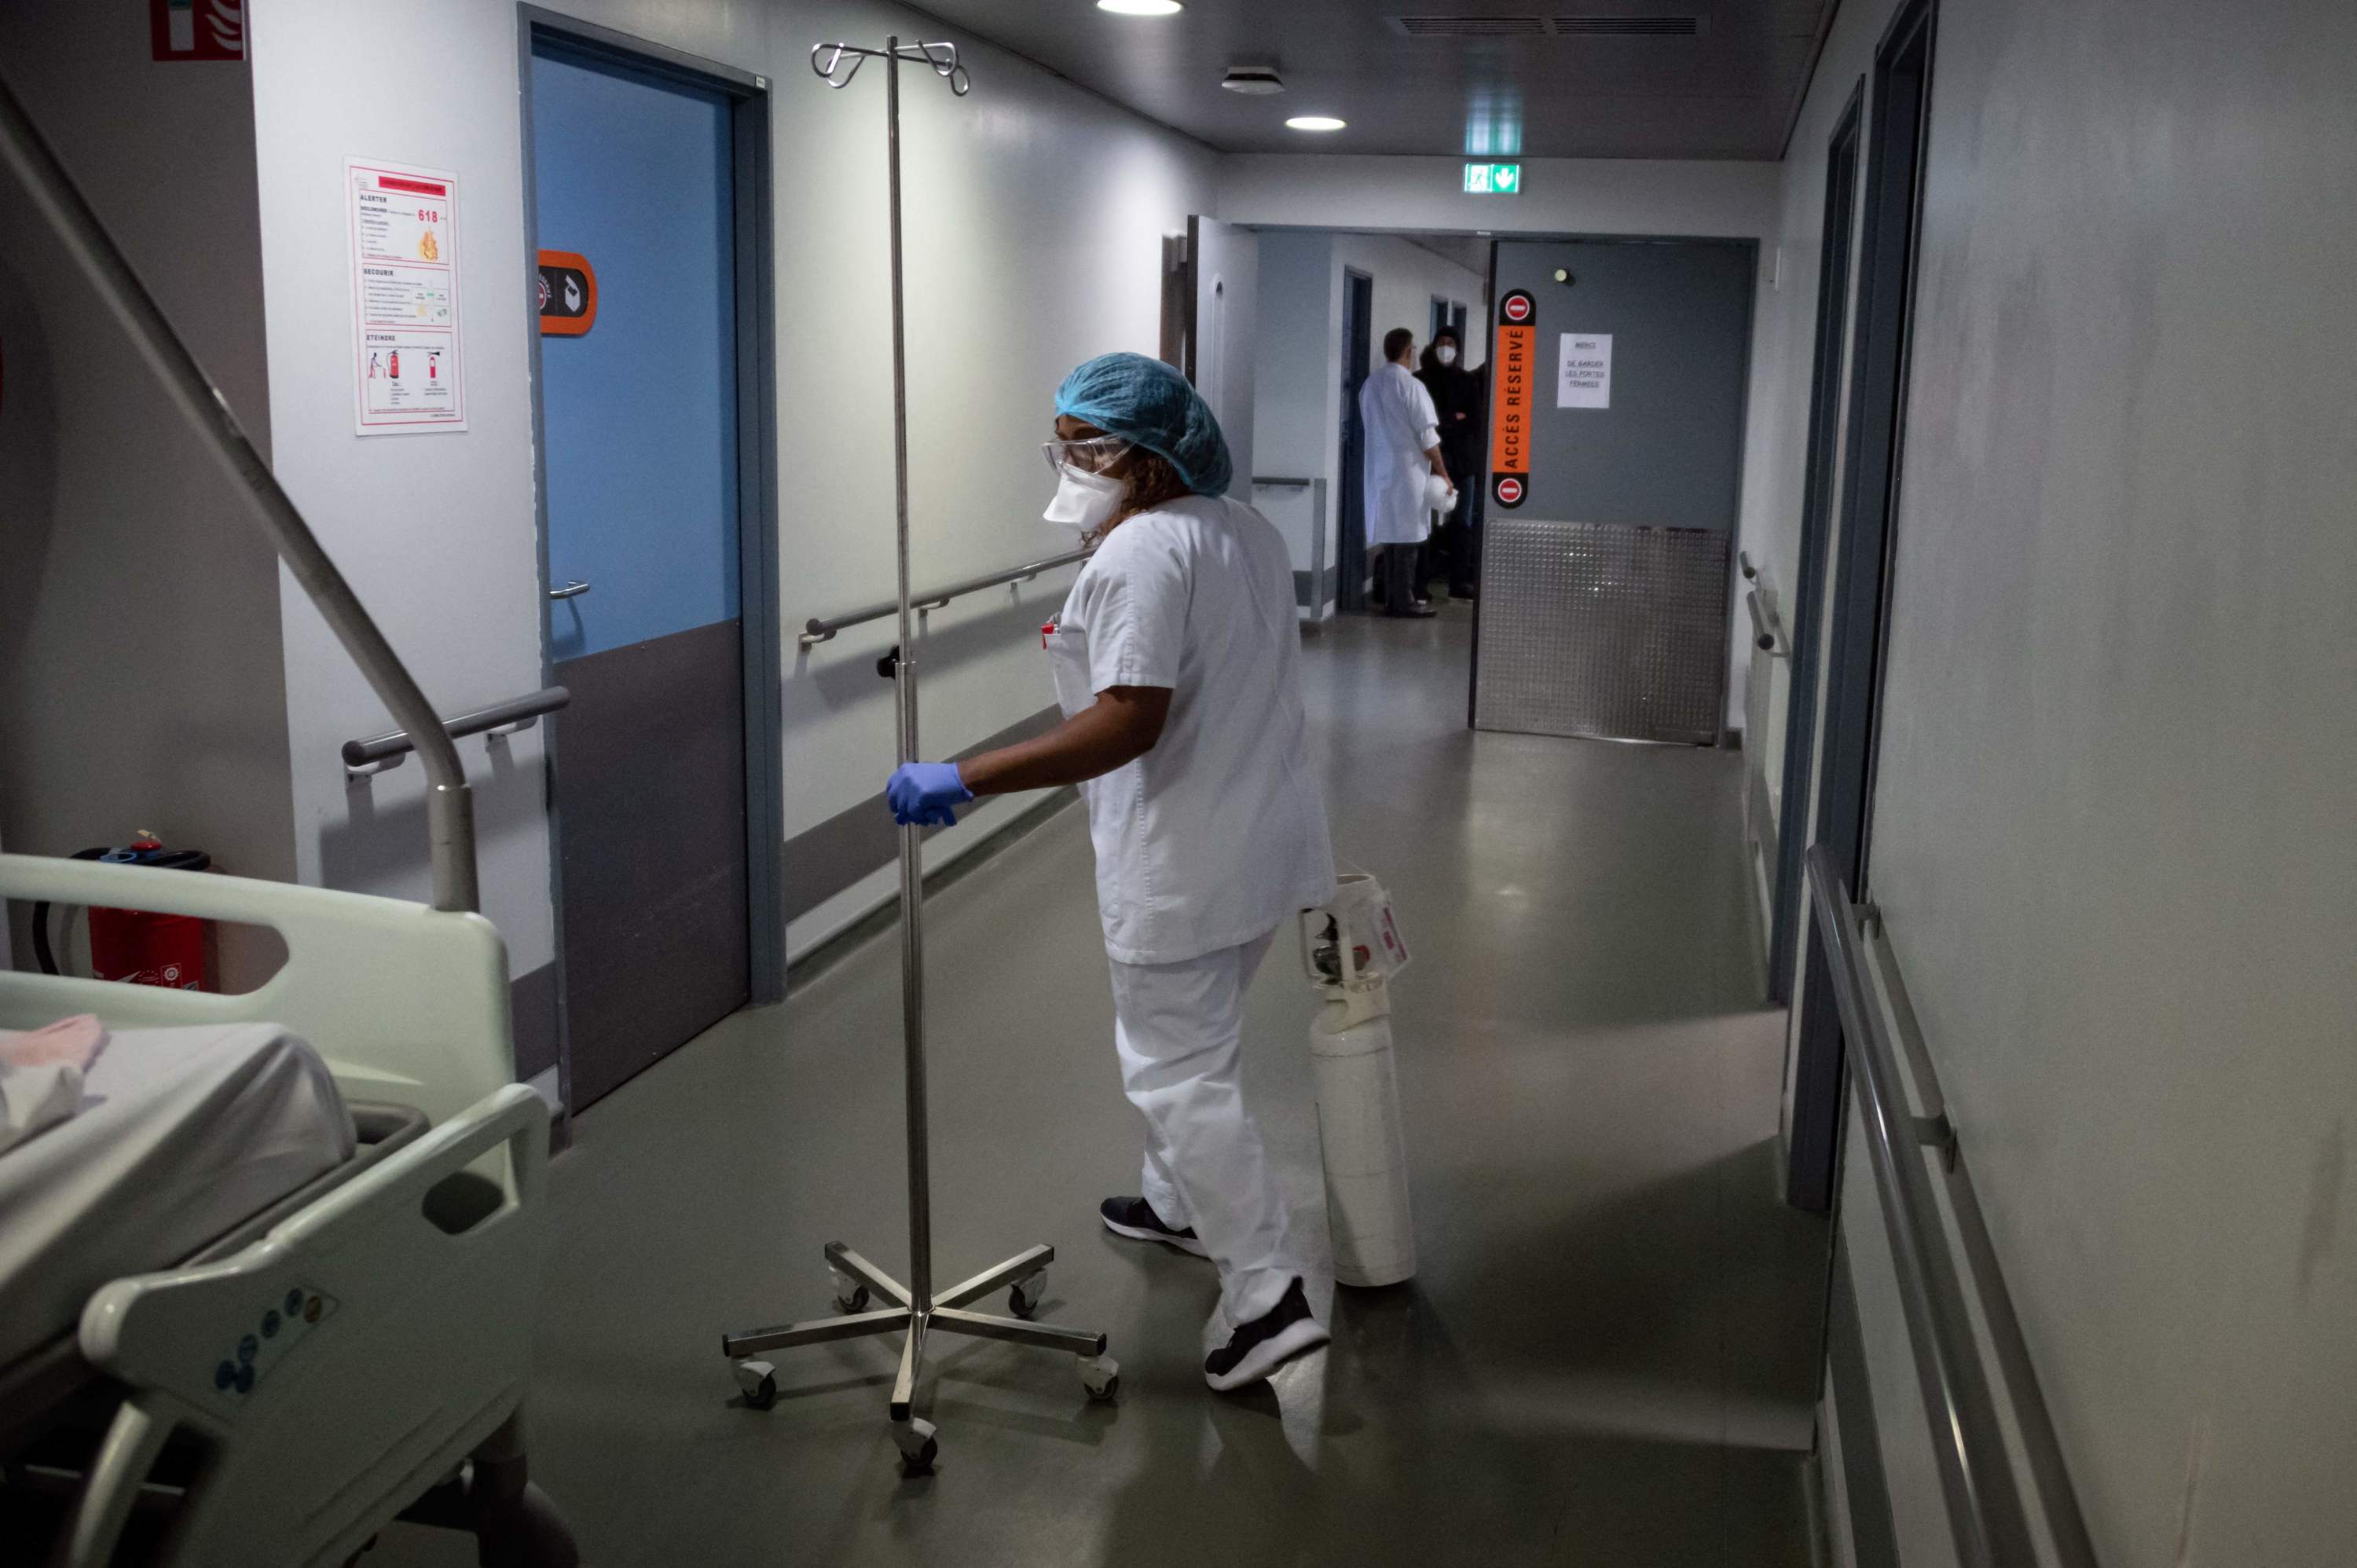 Hôpital de Belfort: une vingtaine d'employés non-vaccinés risquent la radiation